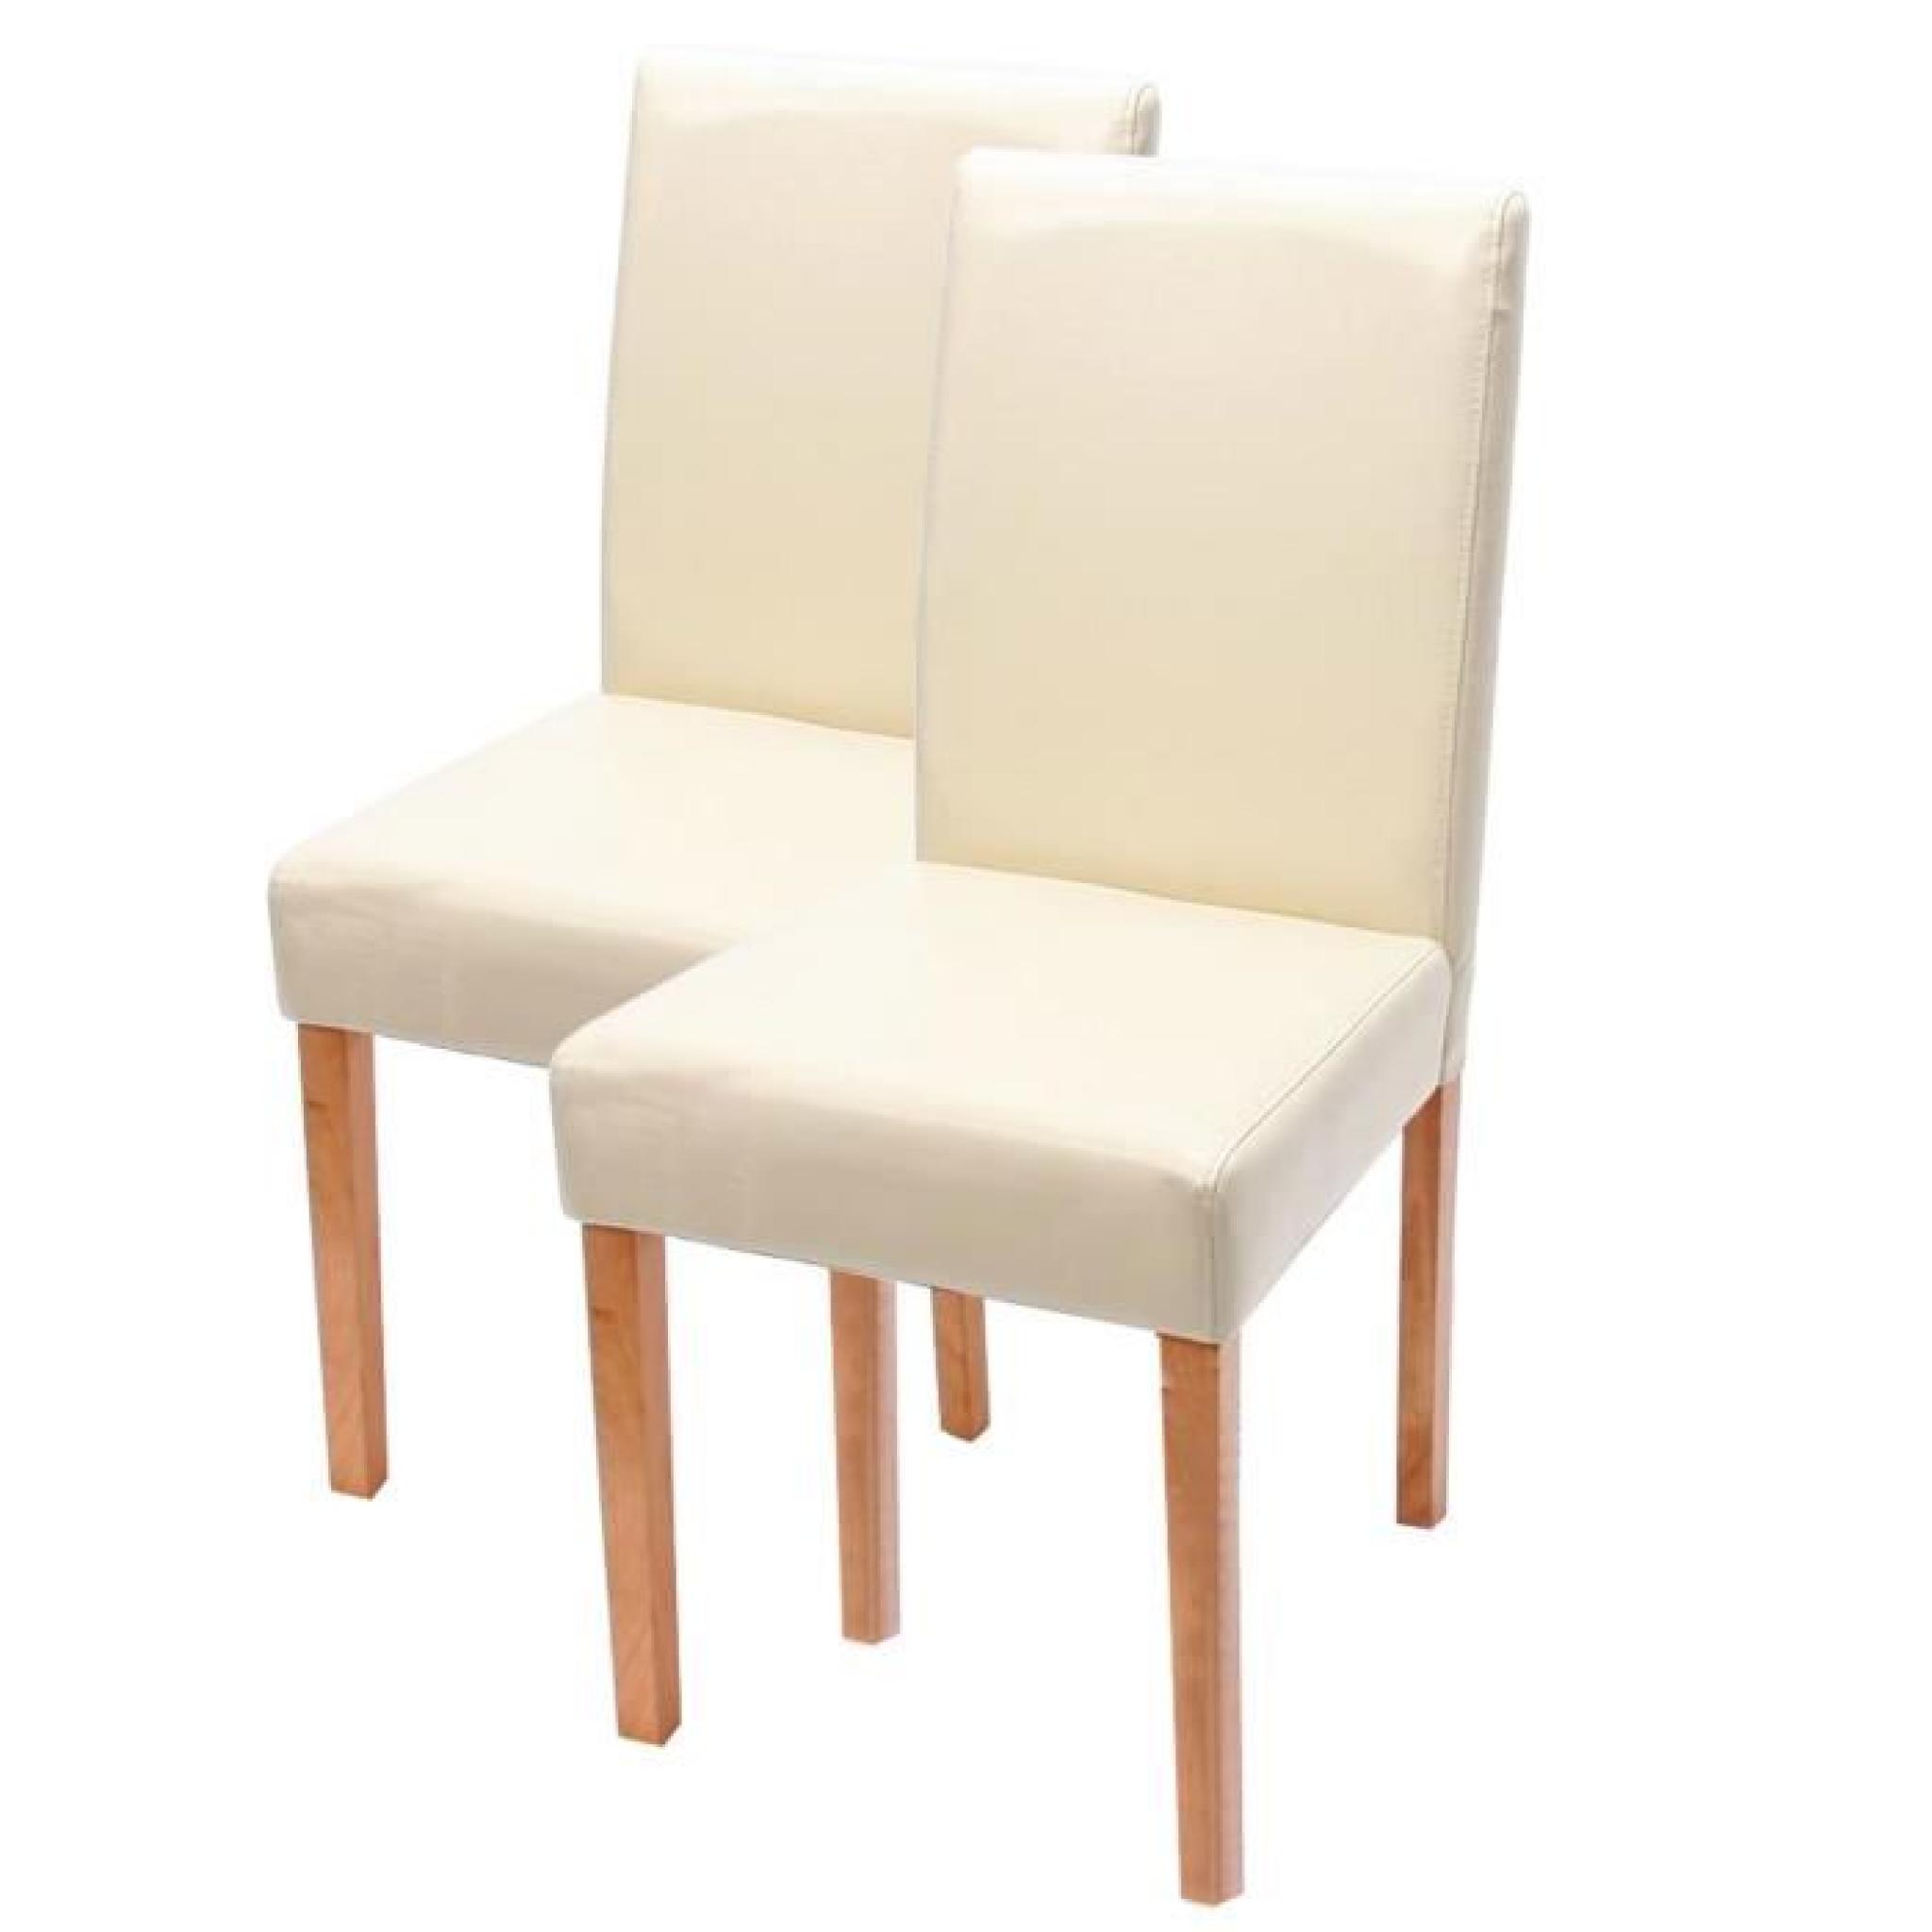  2 chaises Crème similicuir pieds clair bois